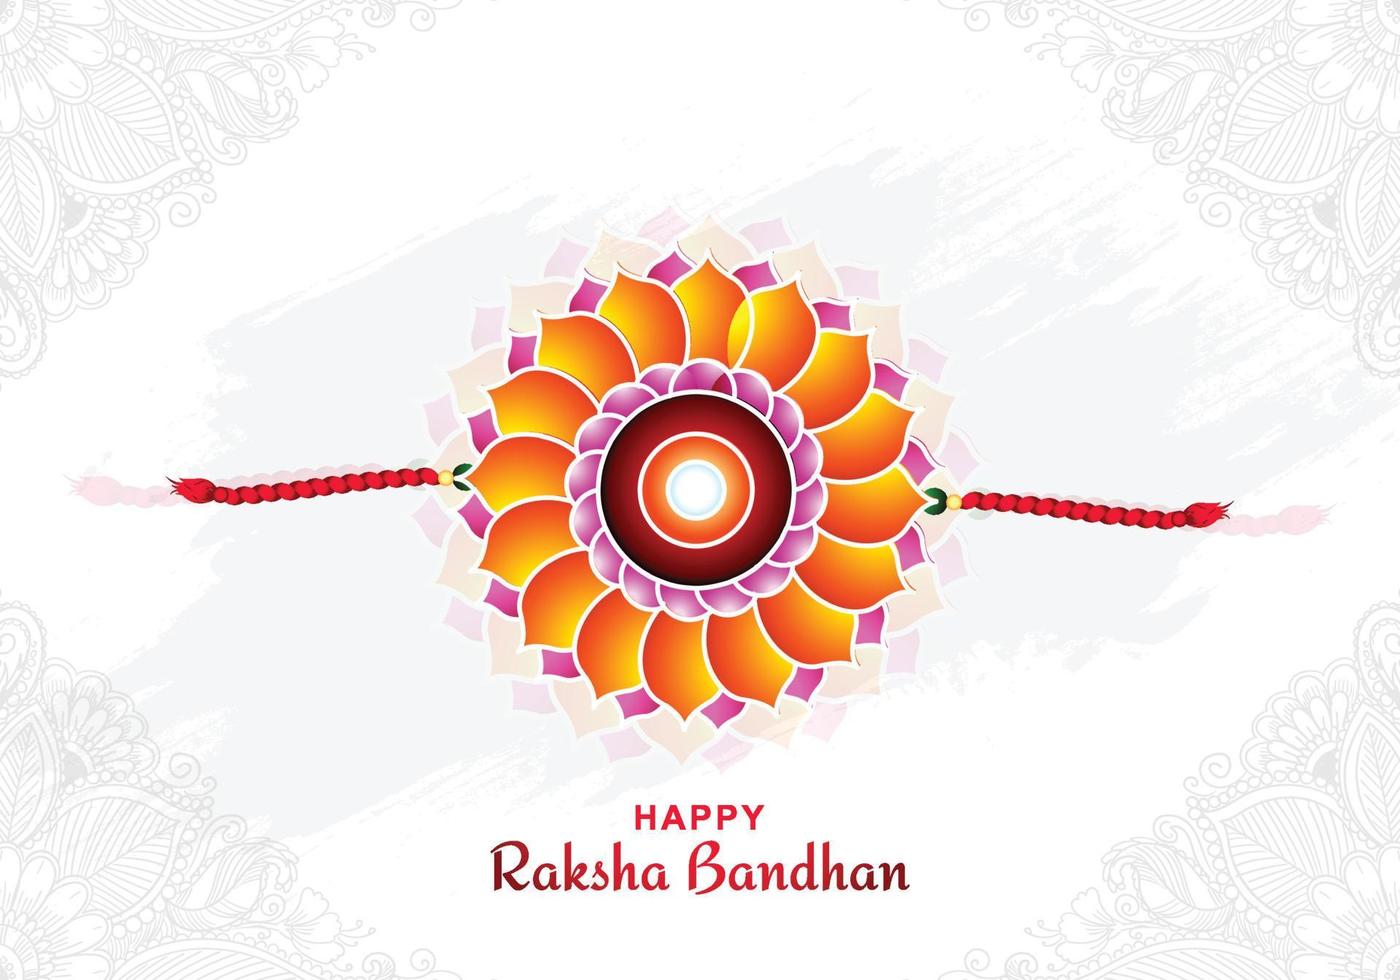 Indian festival raksha bandhan banner with decorative rakhi background vector